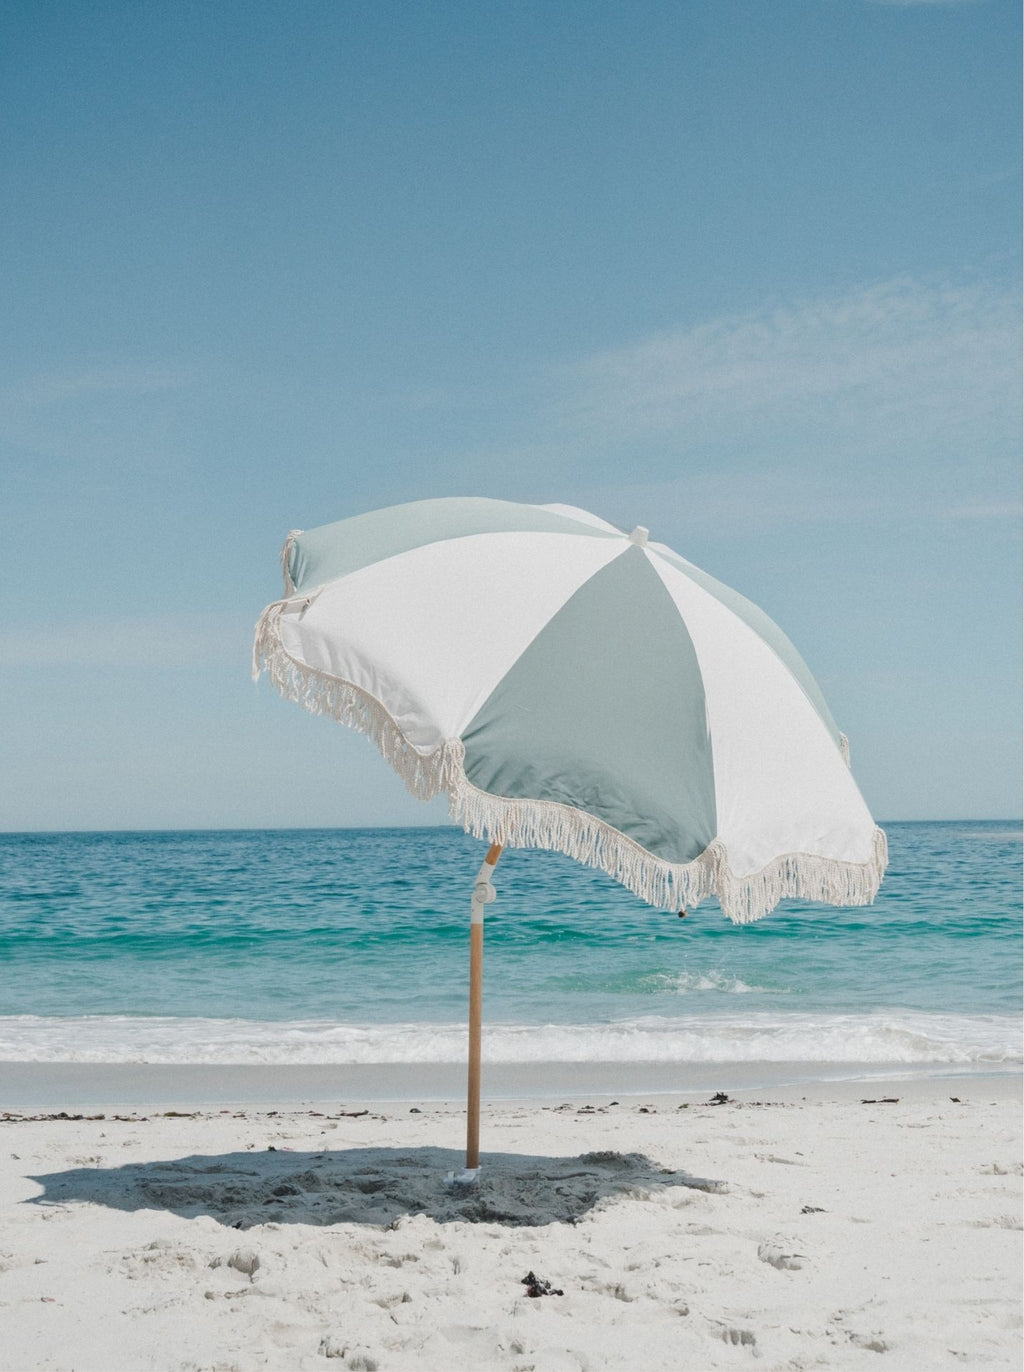 The Victoria Bay Beach Umbrella